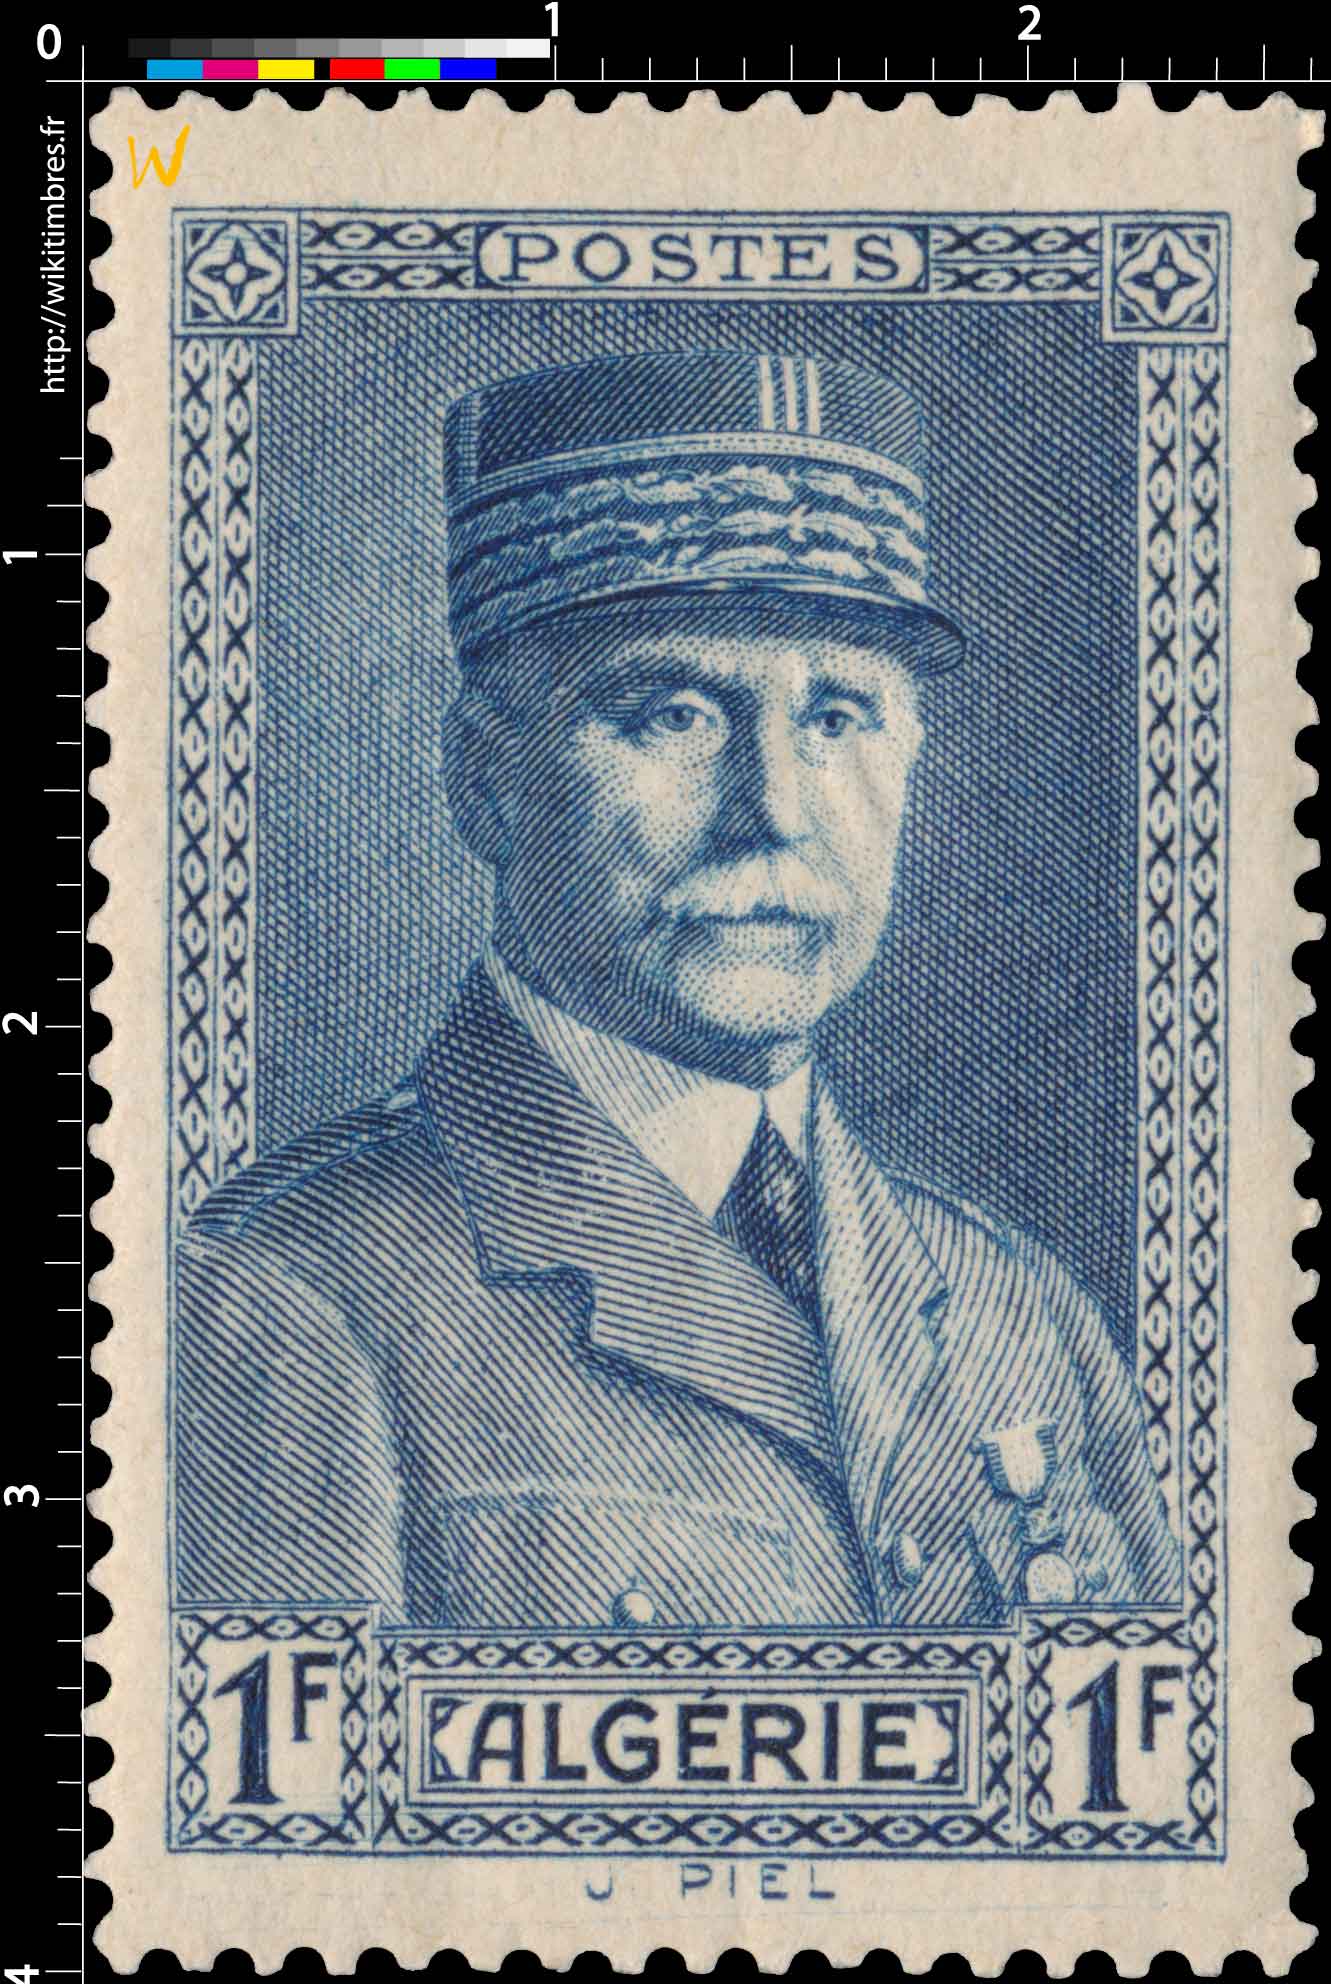 Algérie - Effigie du Maréchal Pétain